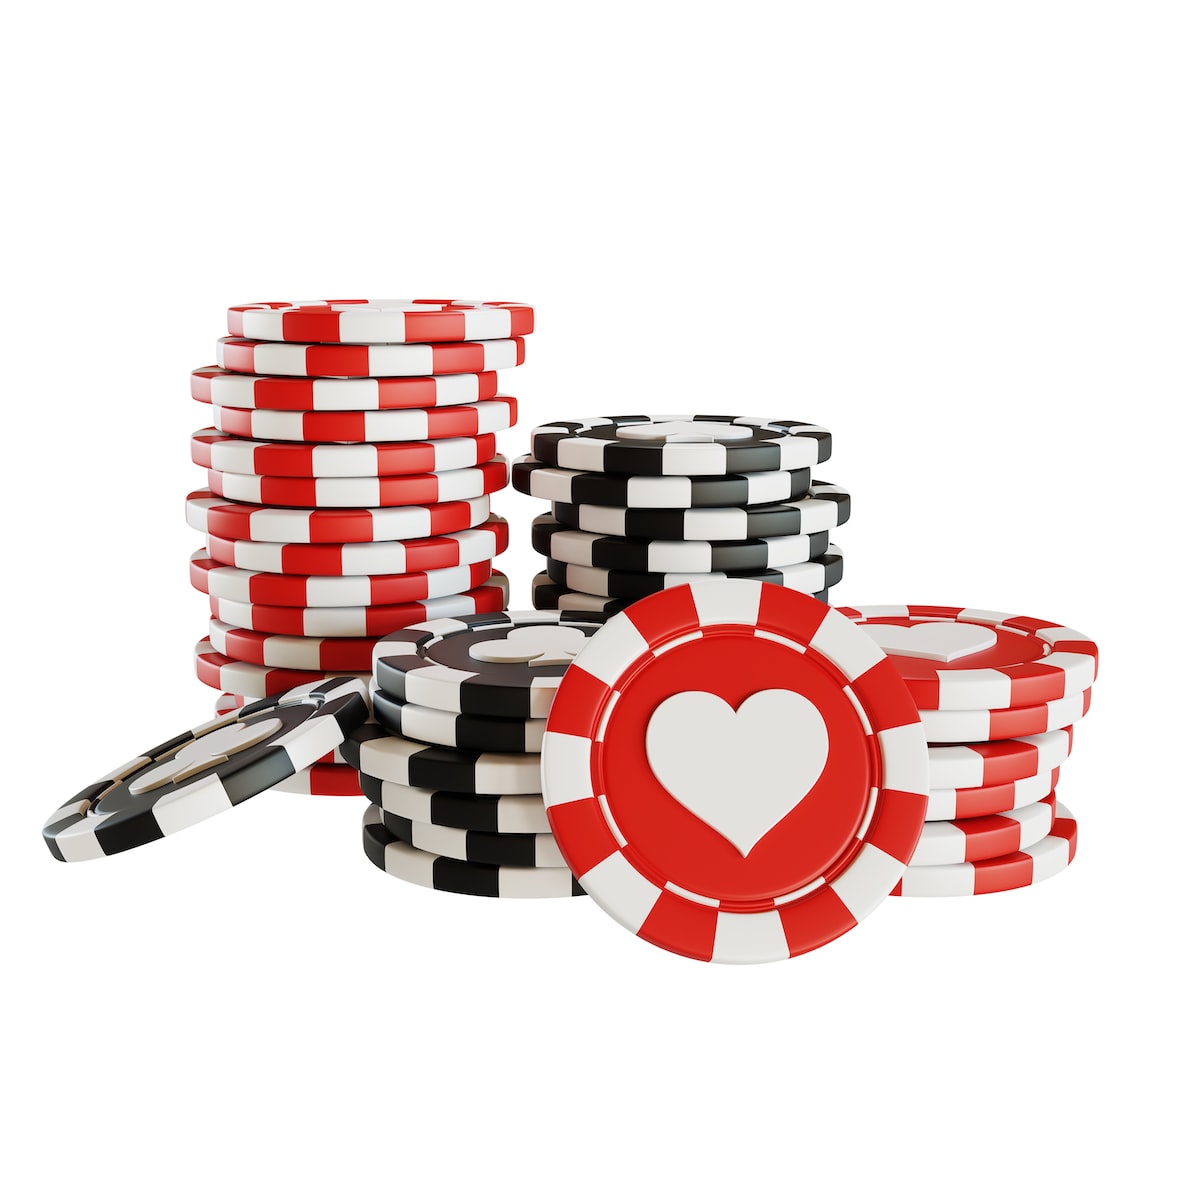 Comment choisir les options de paiement et de retrait sur un casino en ligne? 